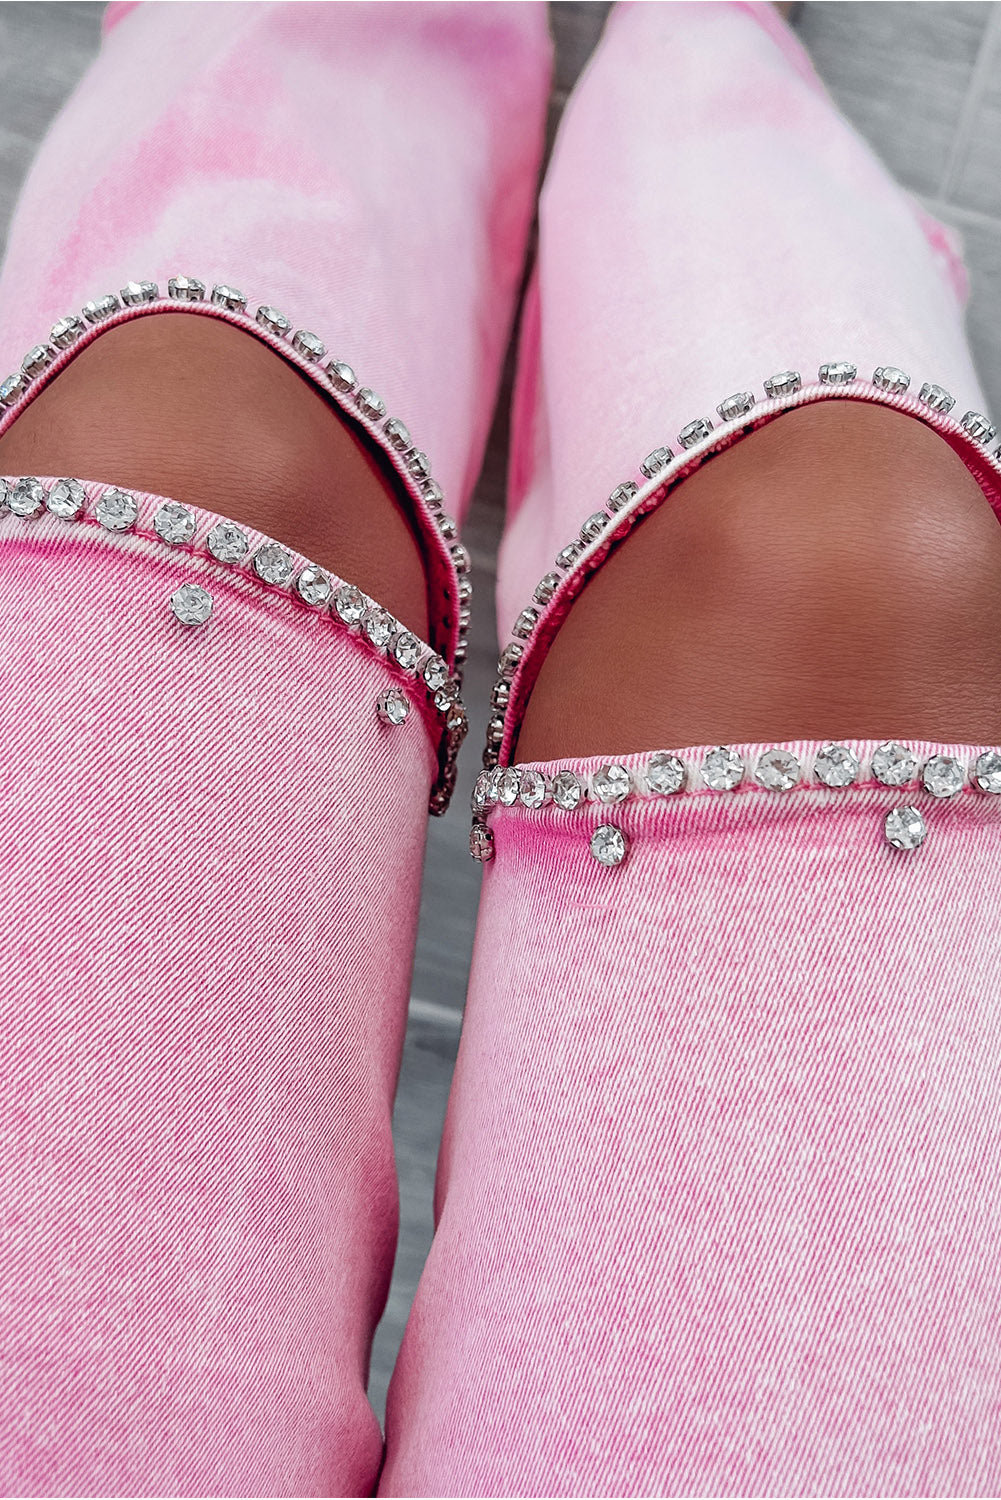 Jeans a gamba larga con ritaglio di strass a vita alta rosa